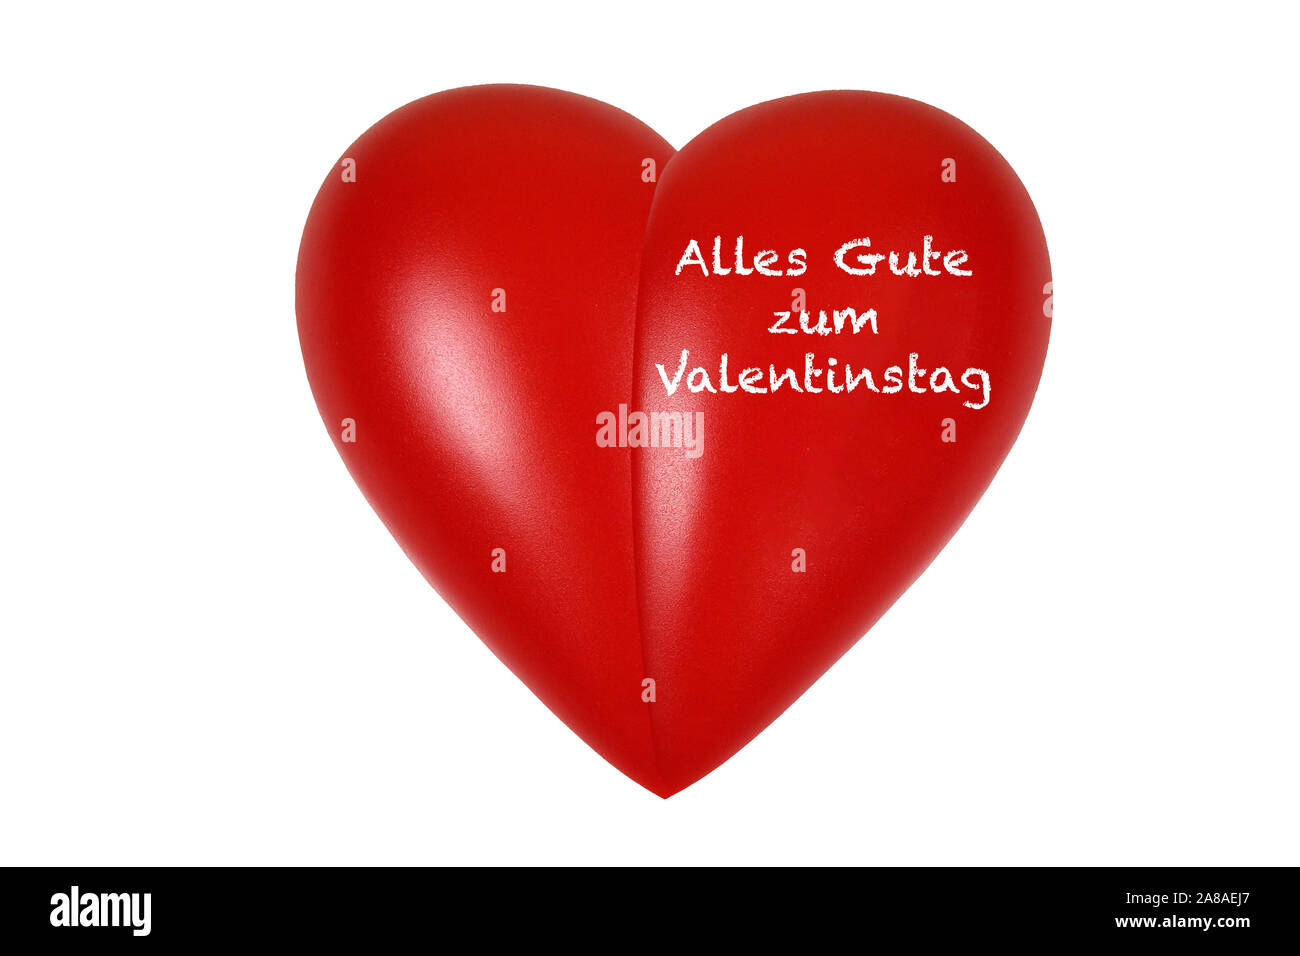 Rotes Herz, orgue, Gesundheit, Körperteil, Alles Gute zum Valentinstag, Banque D'Images